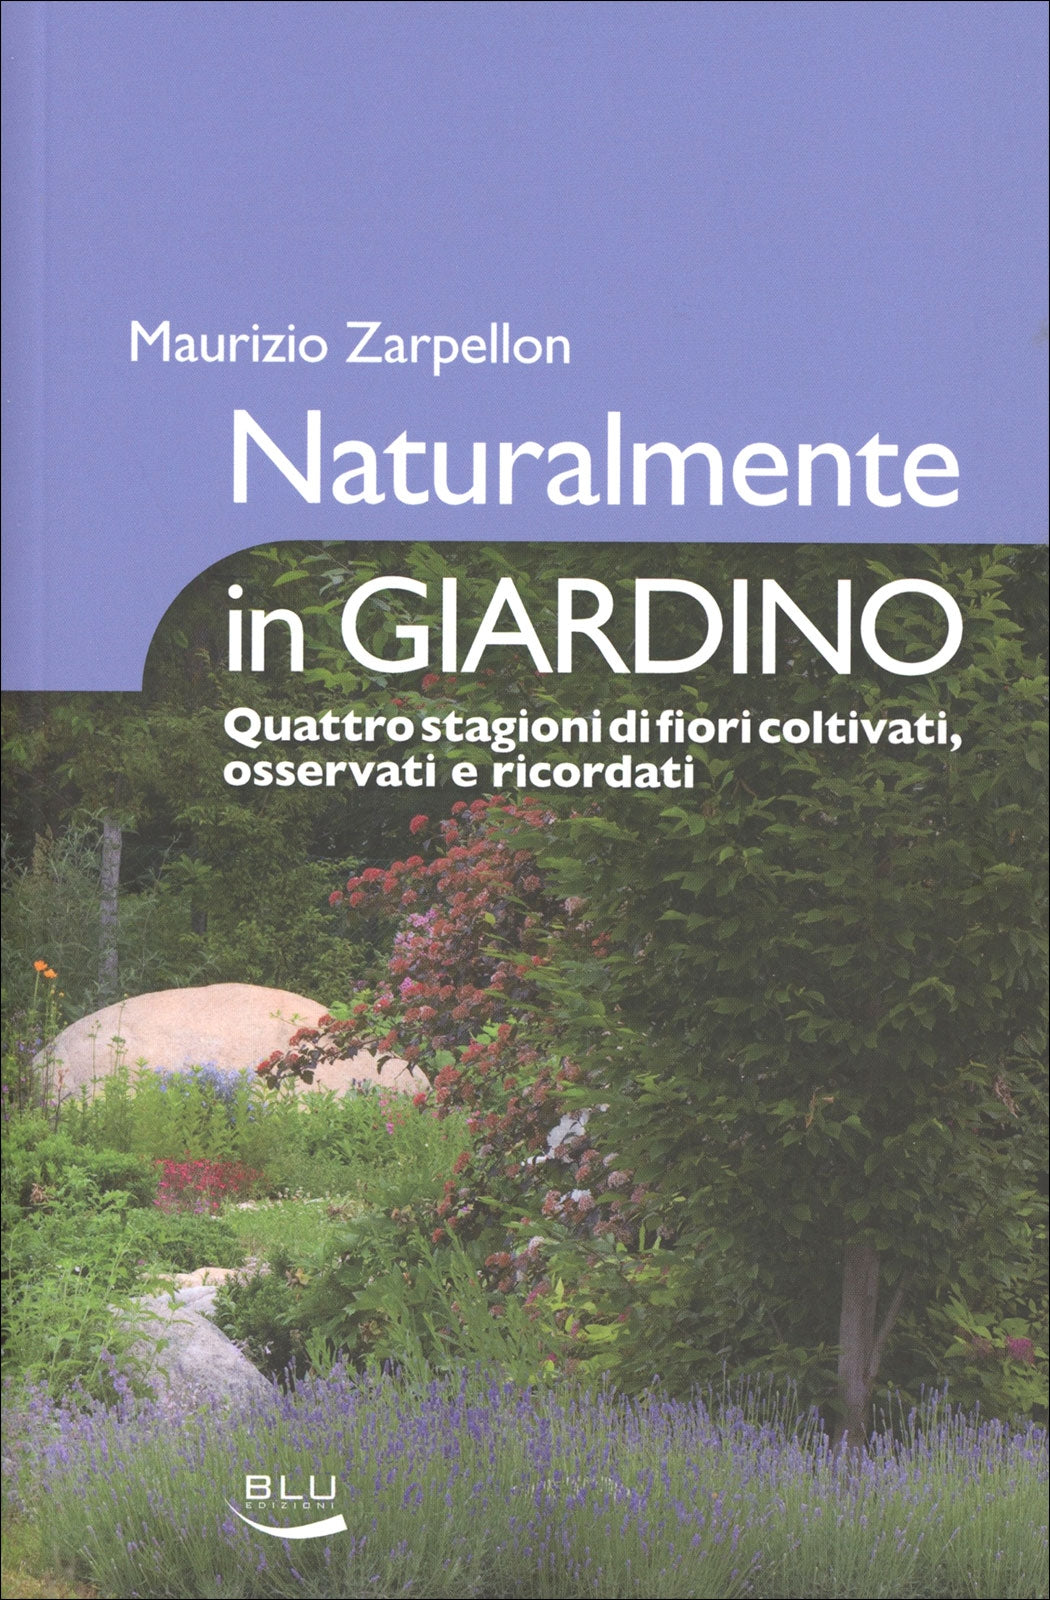 Naturalmente in giardino - Maurizio Zarpellon